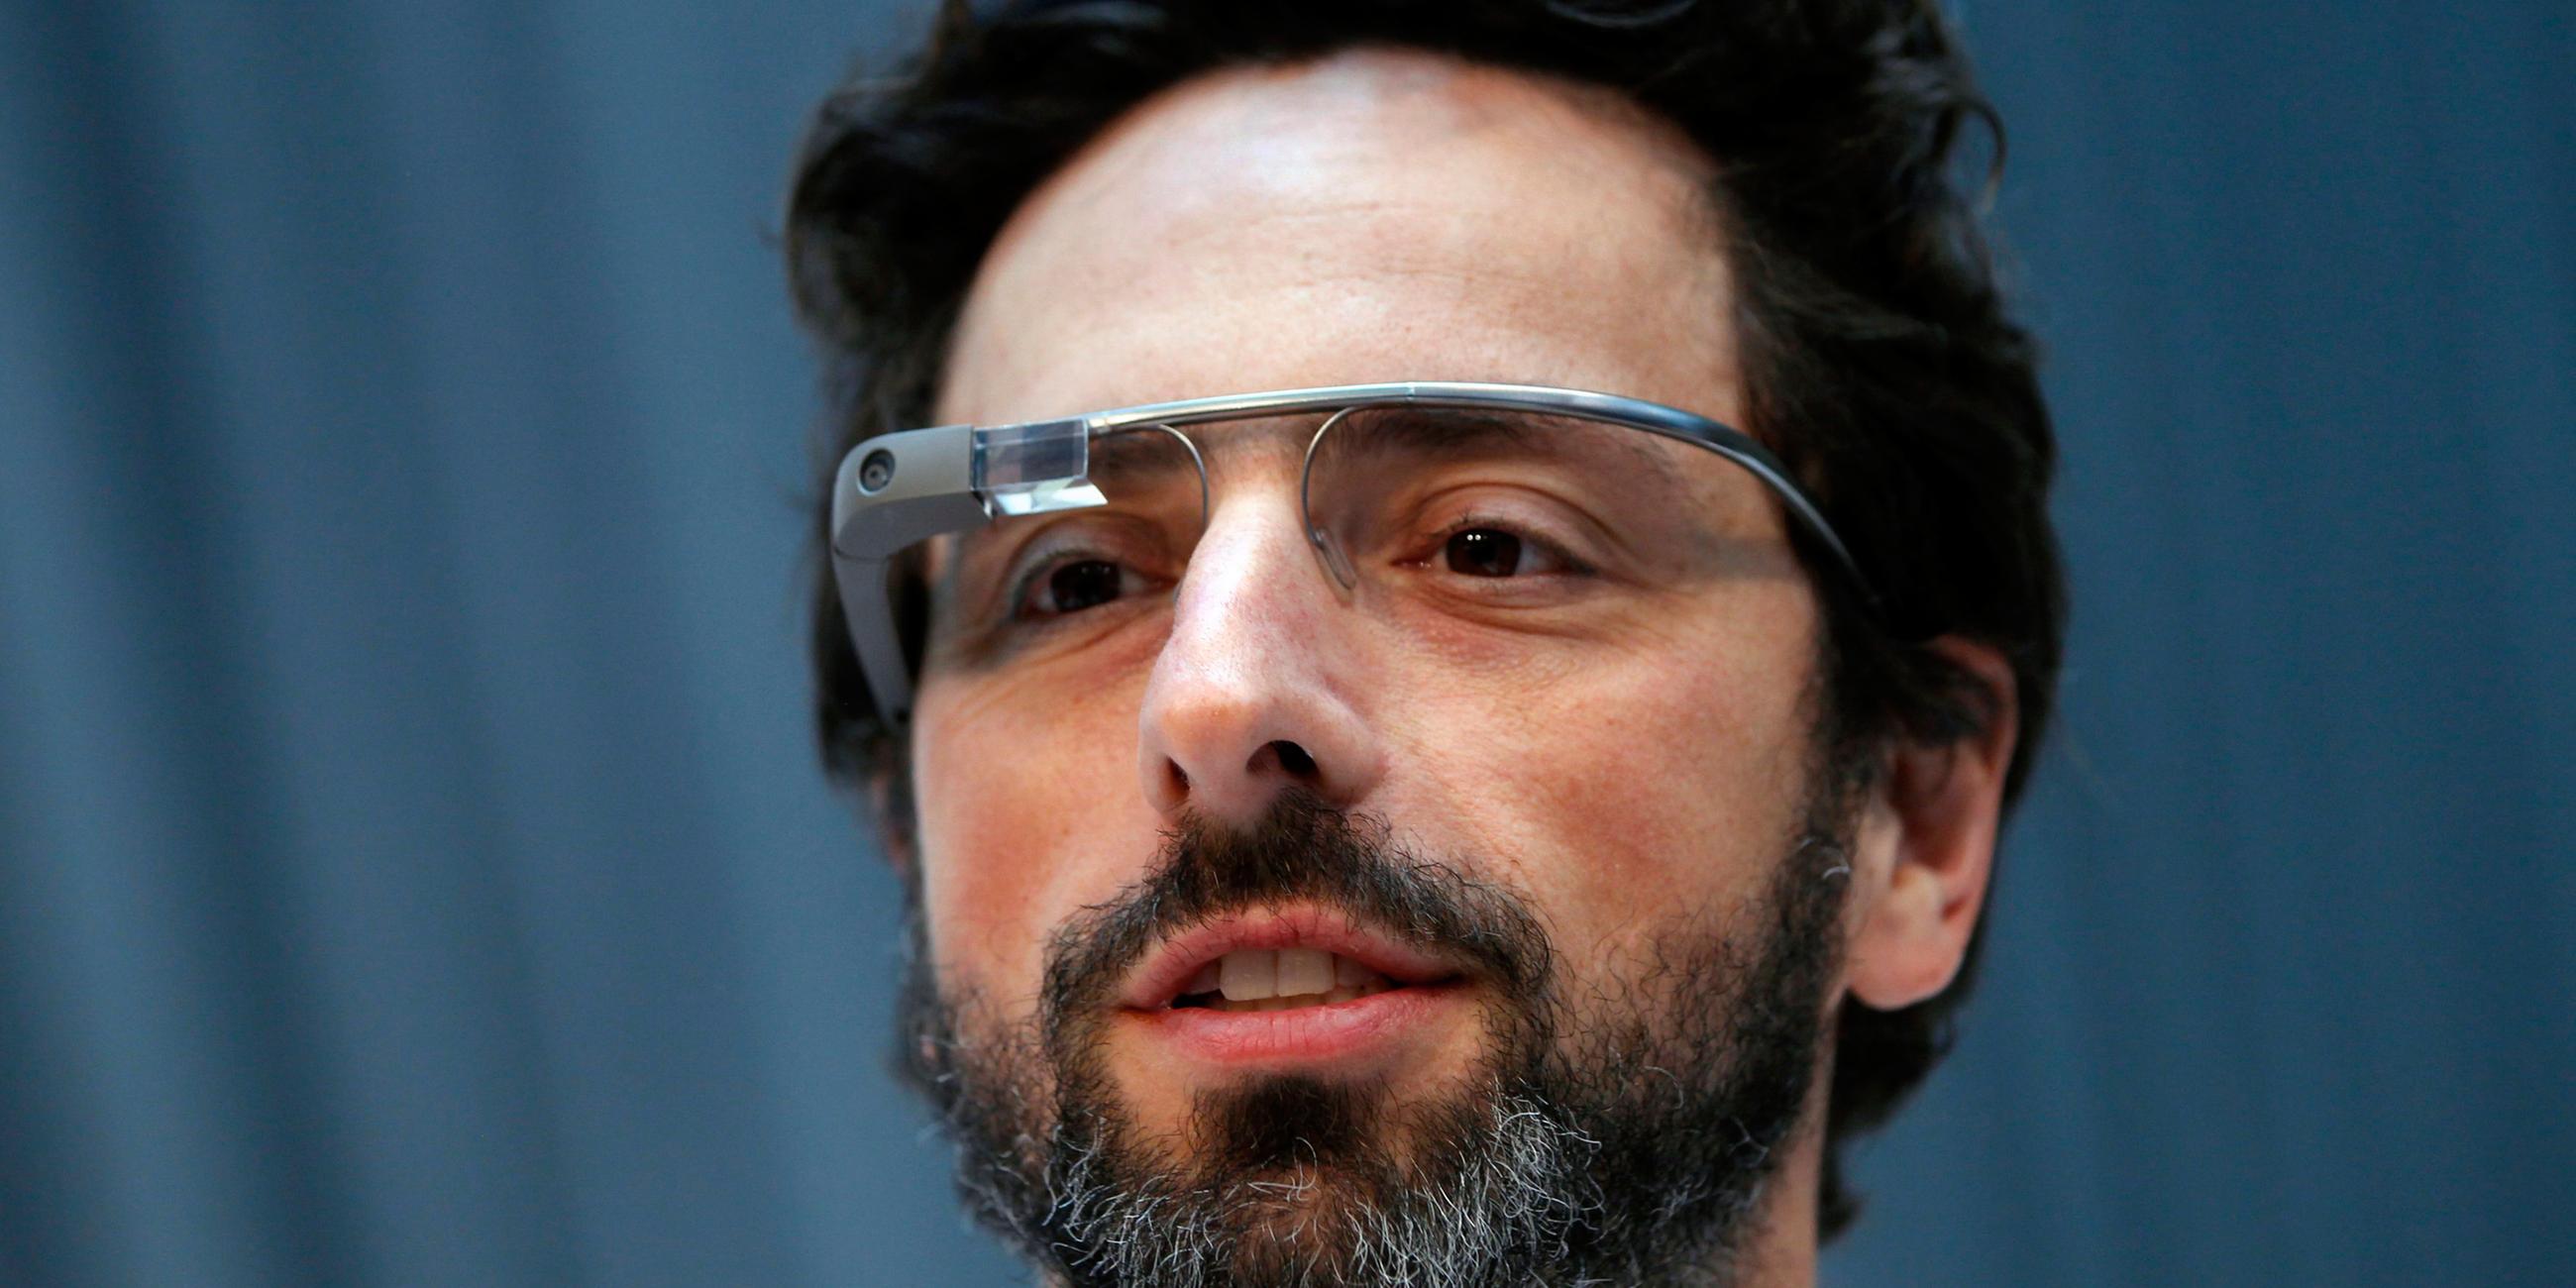 Archiv: Gründer Sergey Brin mit Goggle-Brille, aufgenommen am 20.02.2013 